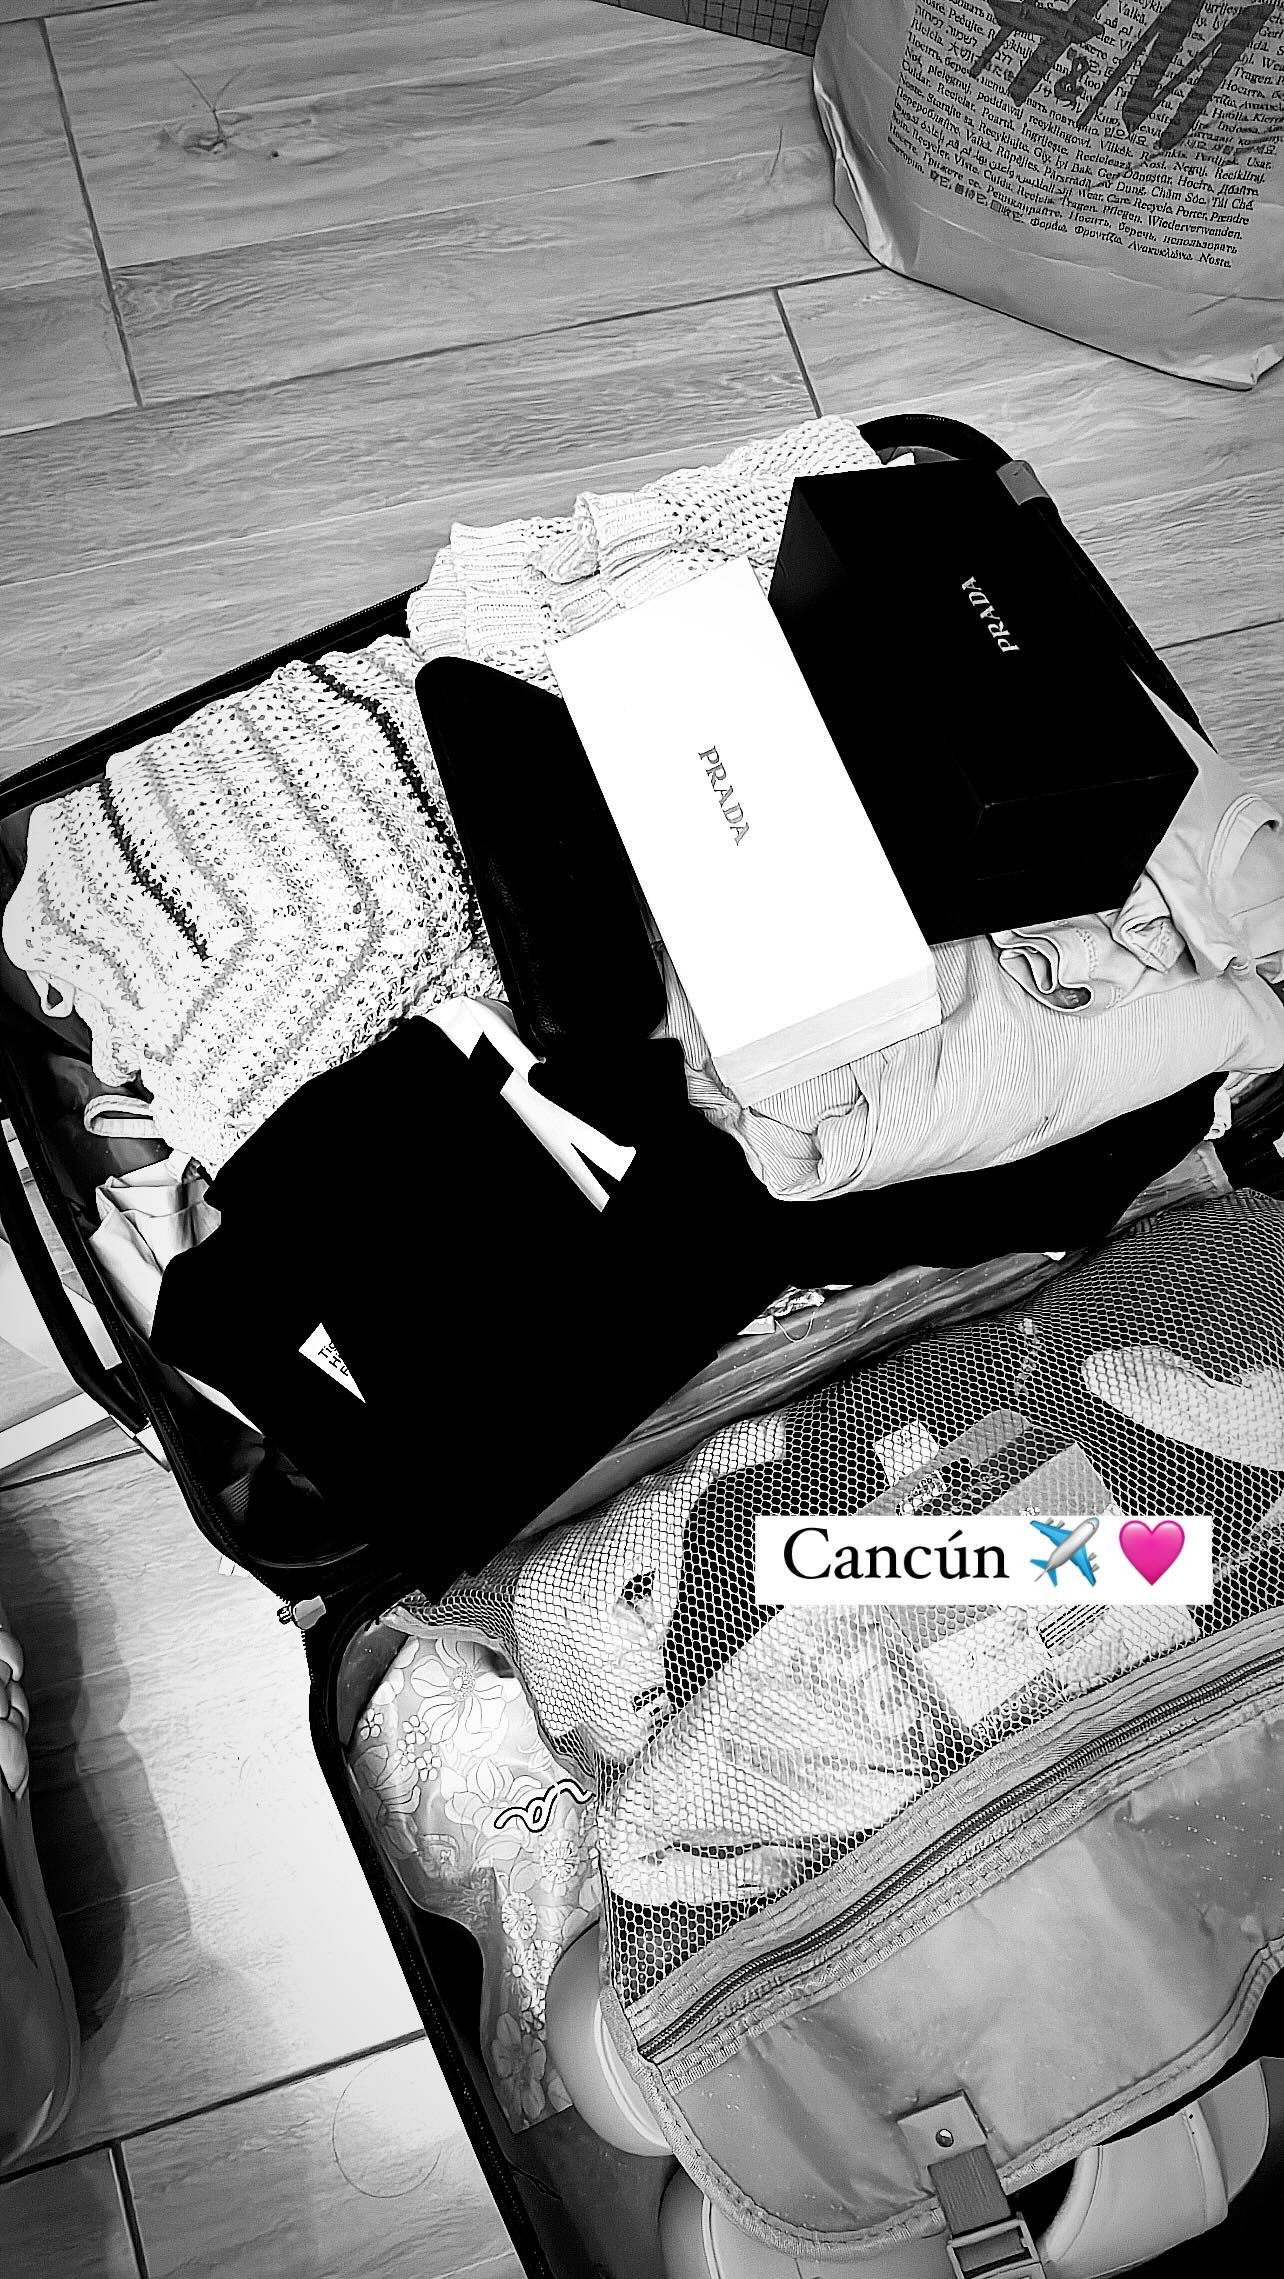 Horas antes de llegar al aeropuerto y pasar el mal rato que le tocó vivir Samahara Lobatón publicaba feliz lo que llevaría a su viaje soñado a Cancún/Foto: Instagram